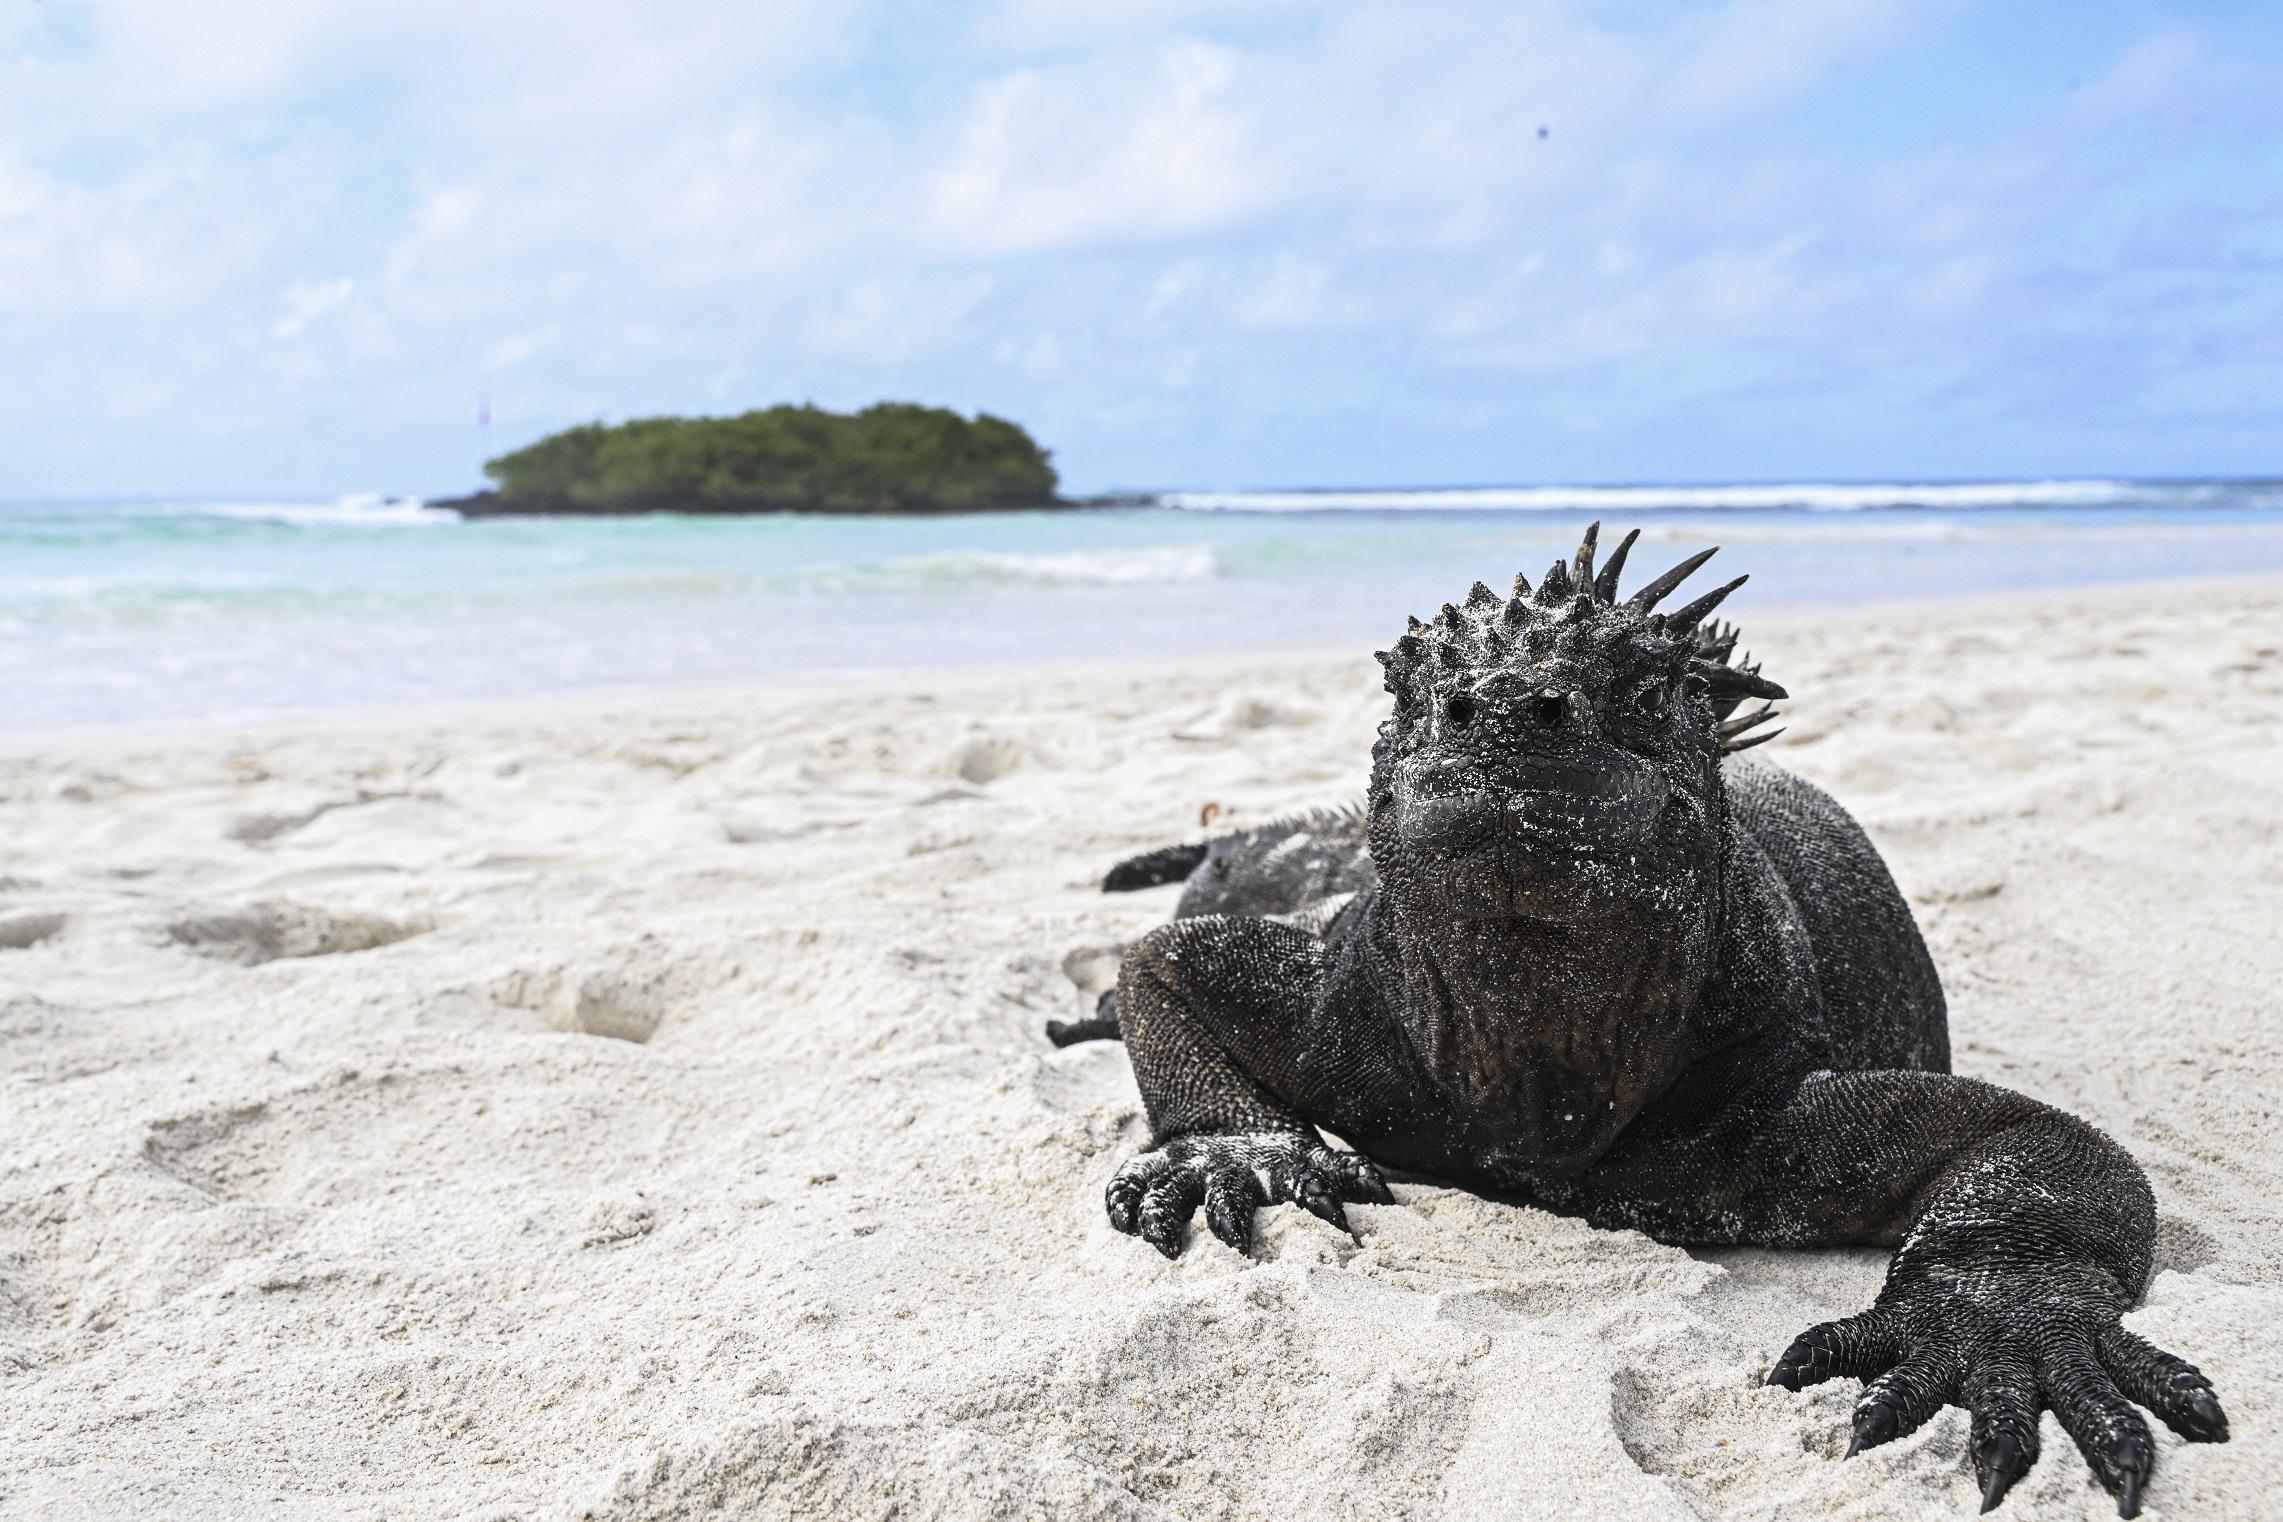 Un iguane marin sur le sable de l'île de Santa Cruz, située à 1000 km au large de l'Equateur. Il s'agit de l'une des espèces menacées par l'augmentation de la température à la surface des océans associée à El Niño. [AFP - ERNESTO BENAVIDES]